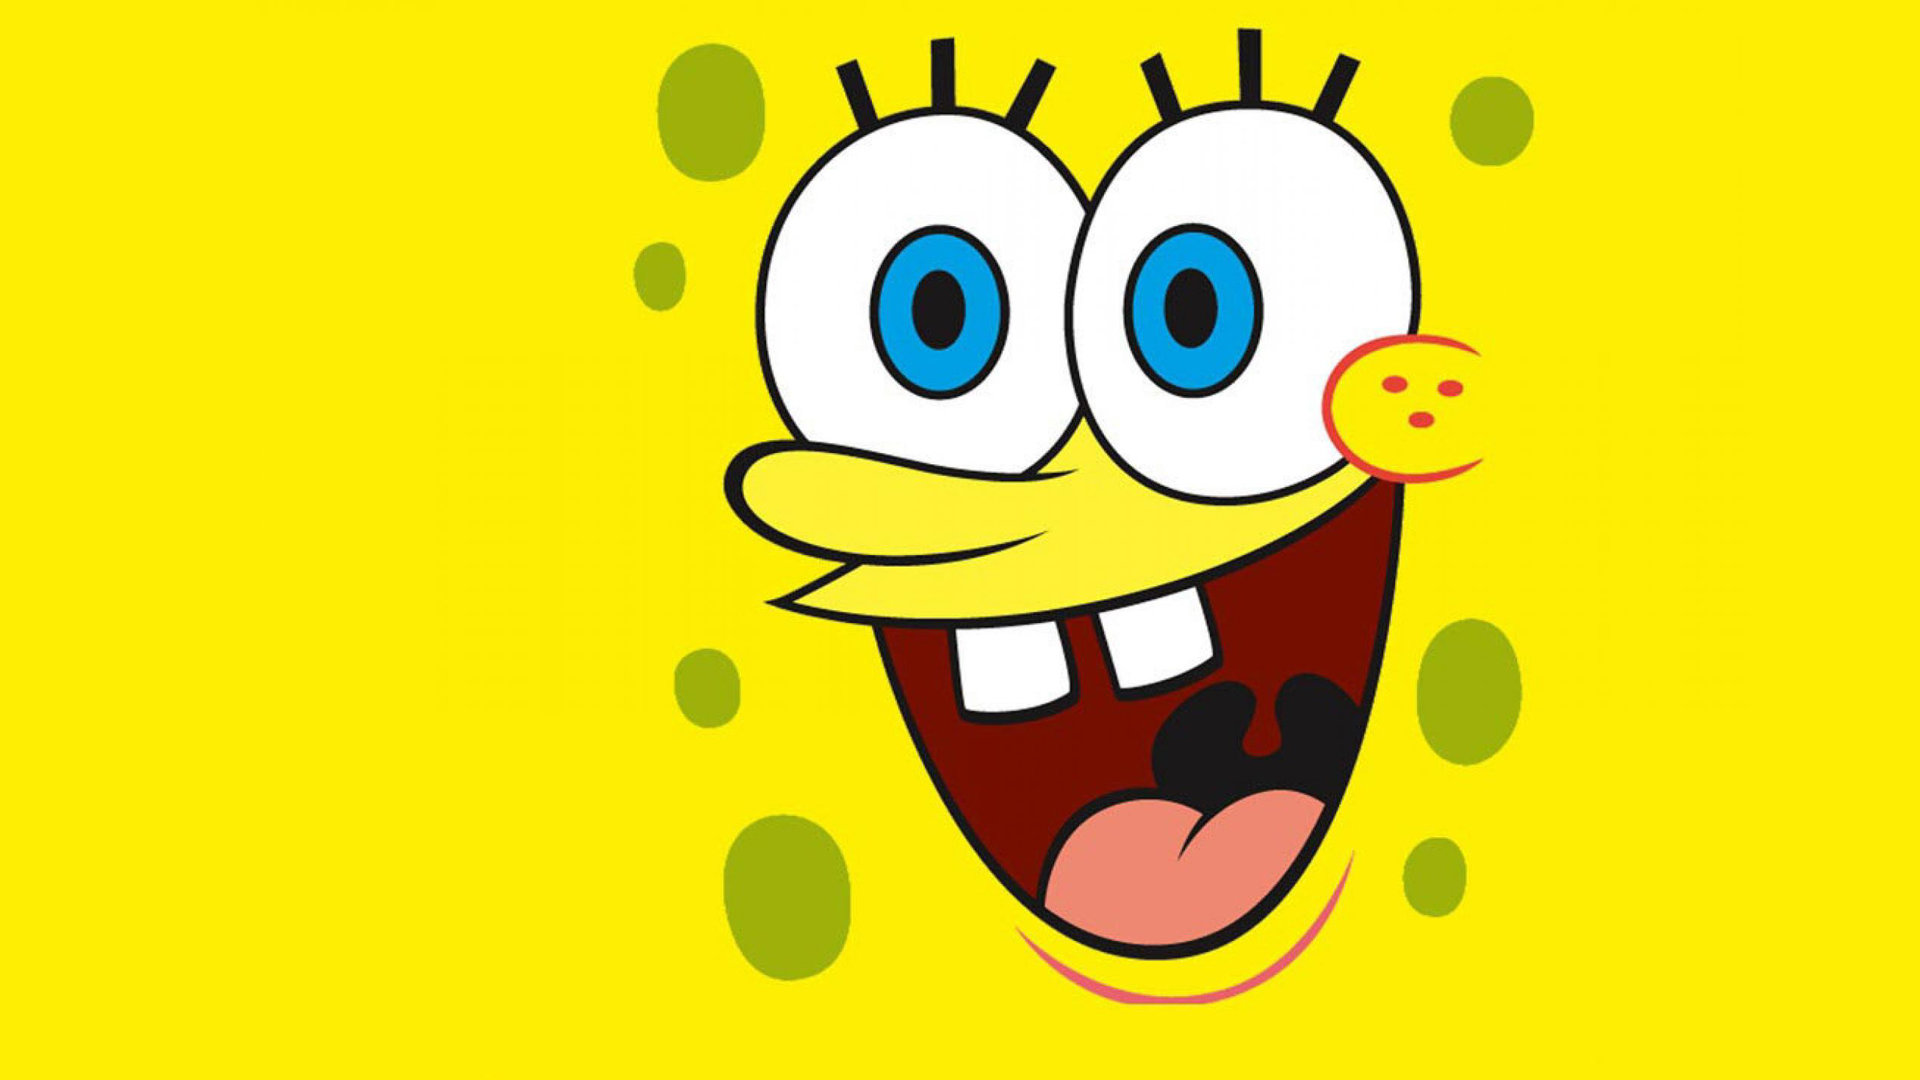 Download full hd 1920x1080 Spongebob Squarepants desktop wallpaper ID:135680 for free